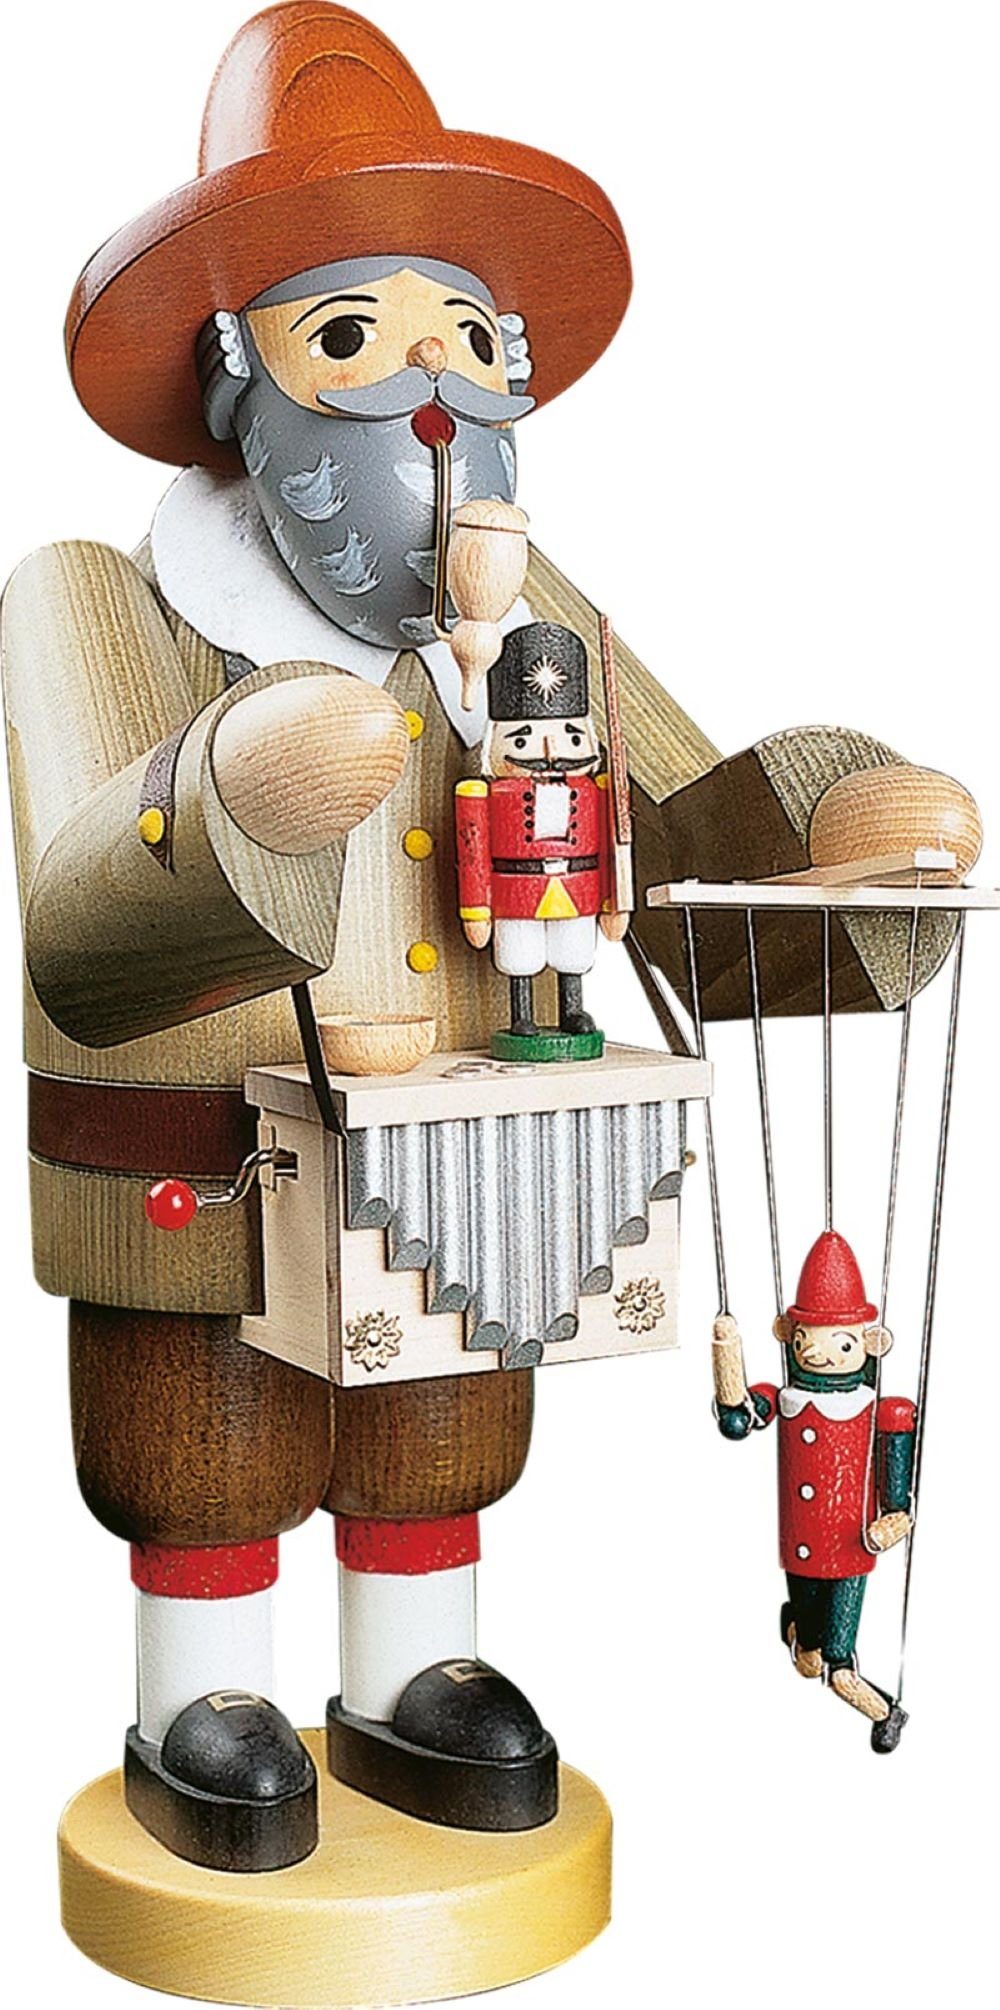 Richard Glaesser Räuchermännchen Puppenspieler mt Spielwerk, Höhe 36cm, Handwerkskunst original Erzgebirge | Räuchermännchen